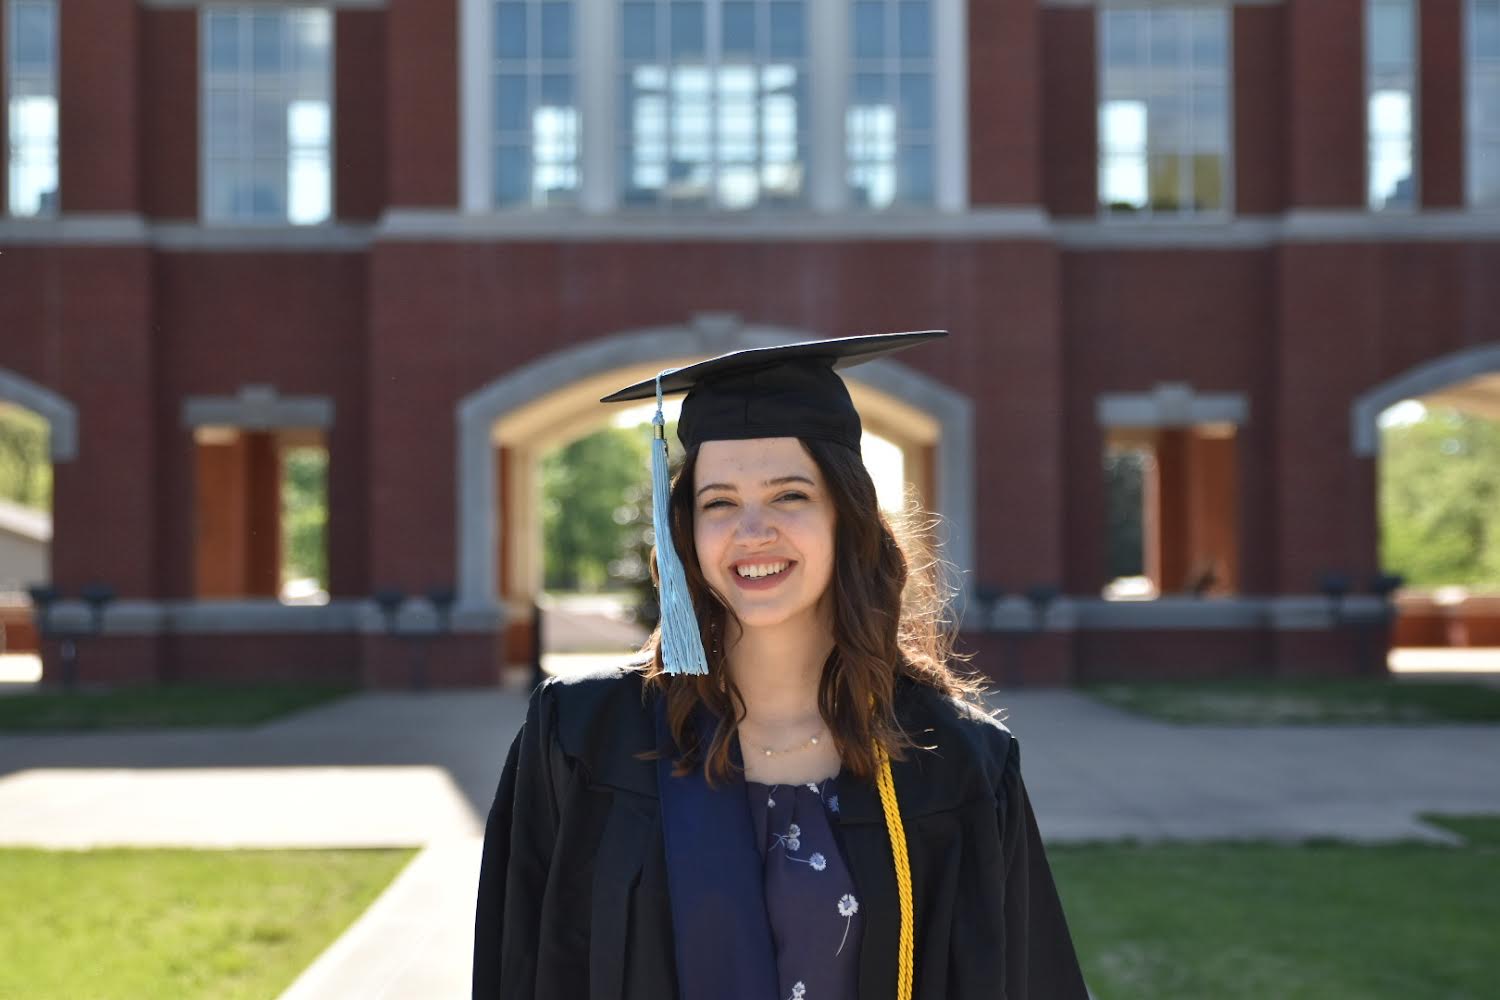 Jaden Estes, a May 2022 graduated senior from Paducah, Kentucky